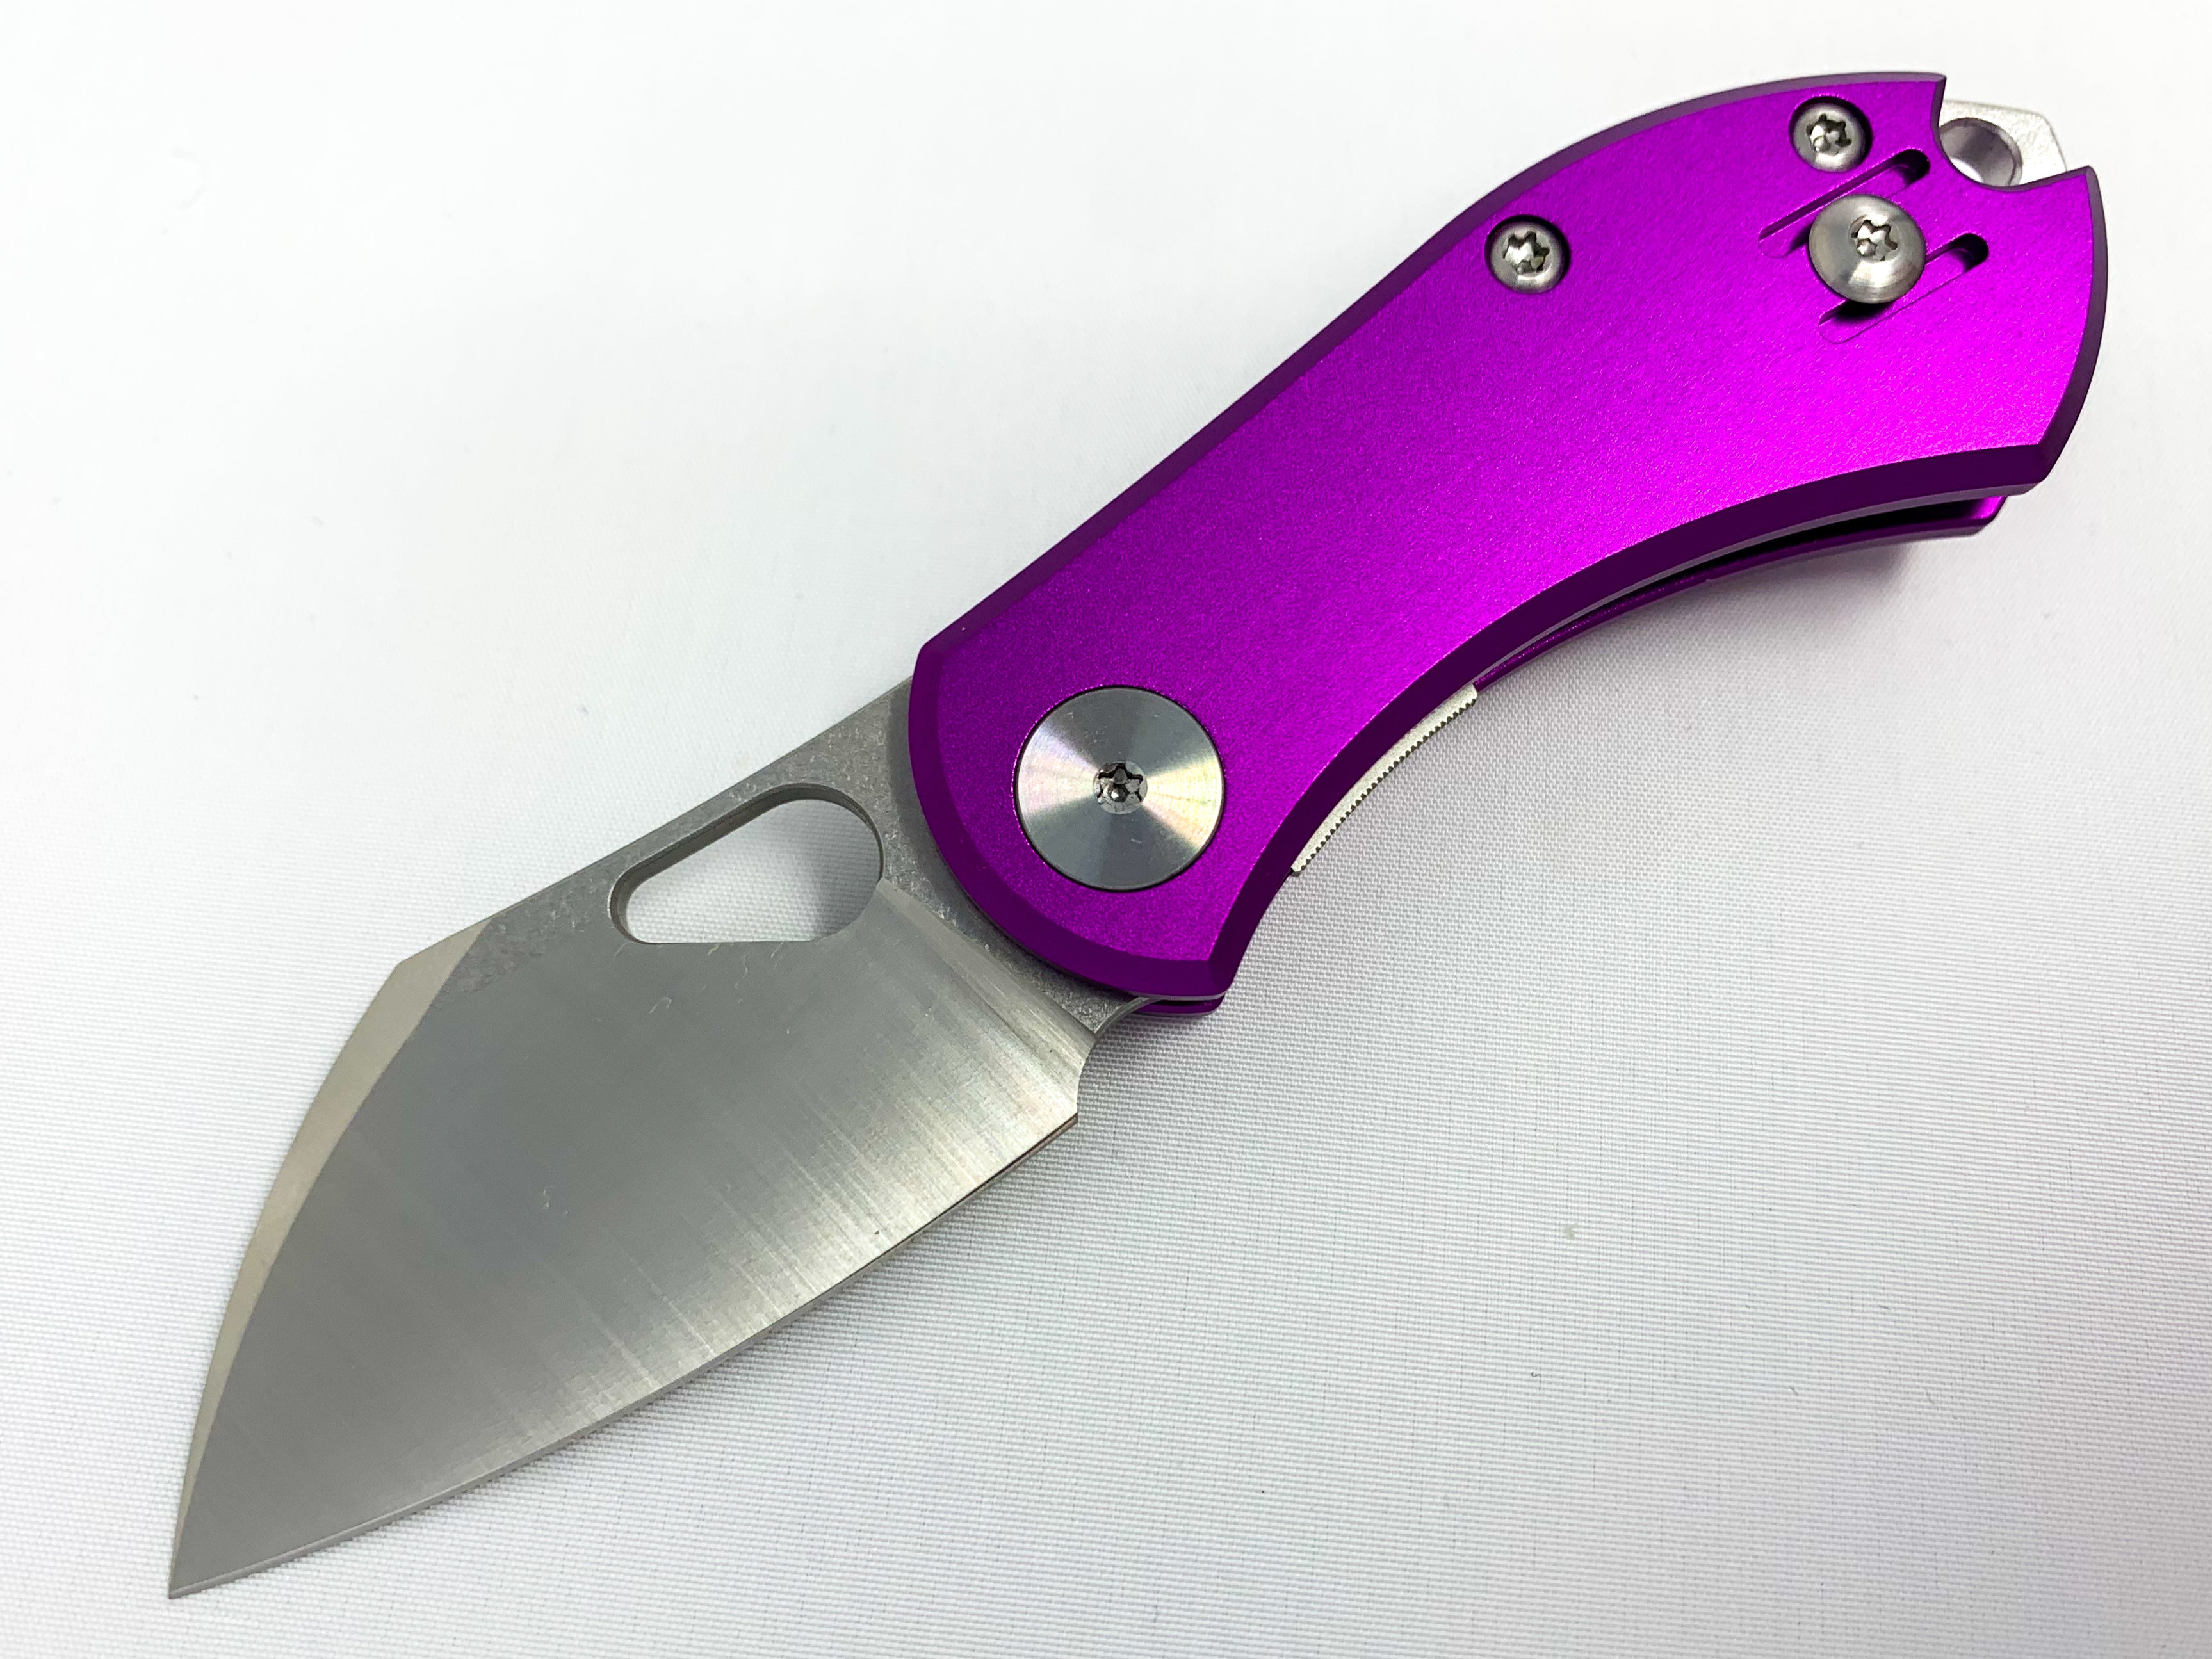 GiantMouse ACE Nibbler - Purple Aluminum Handle - N690